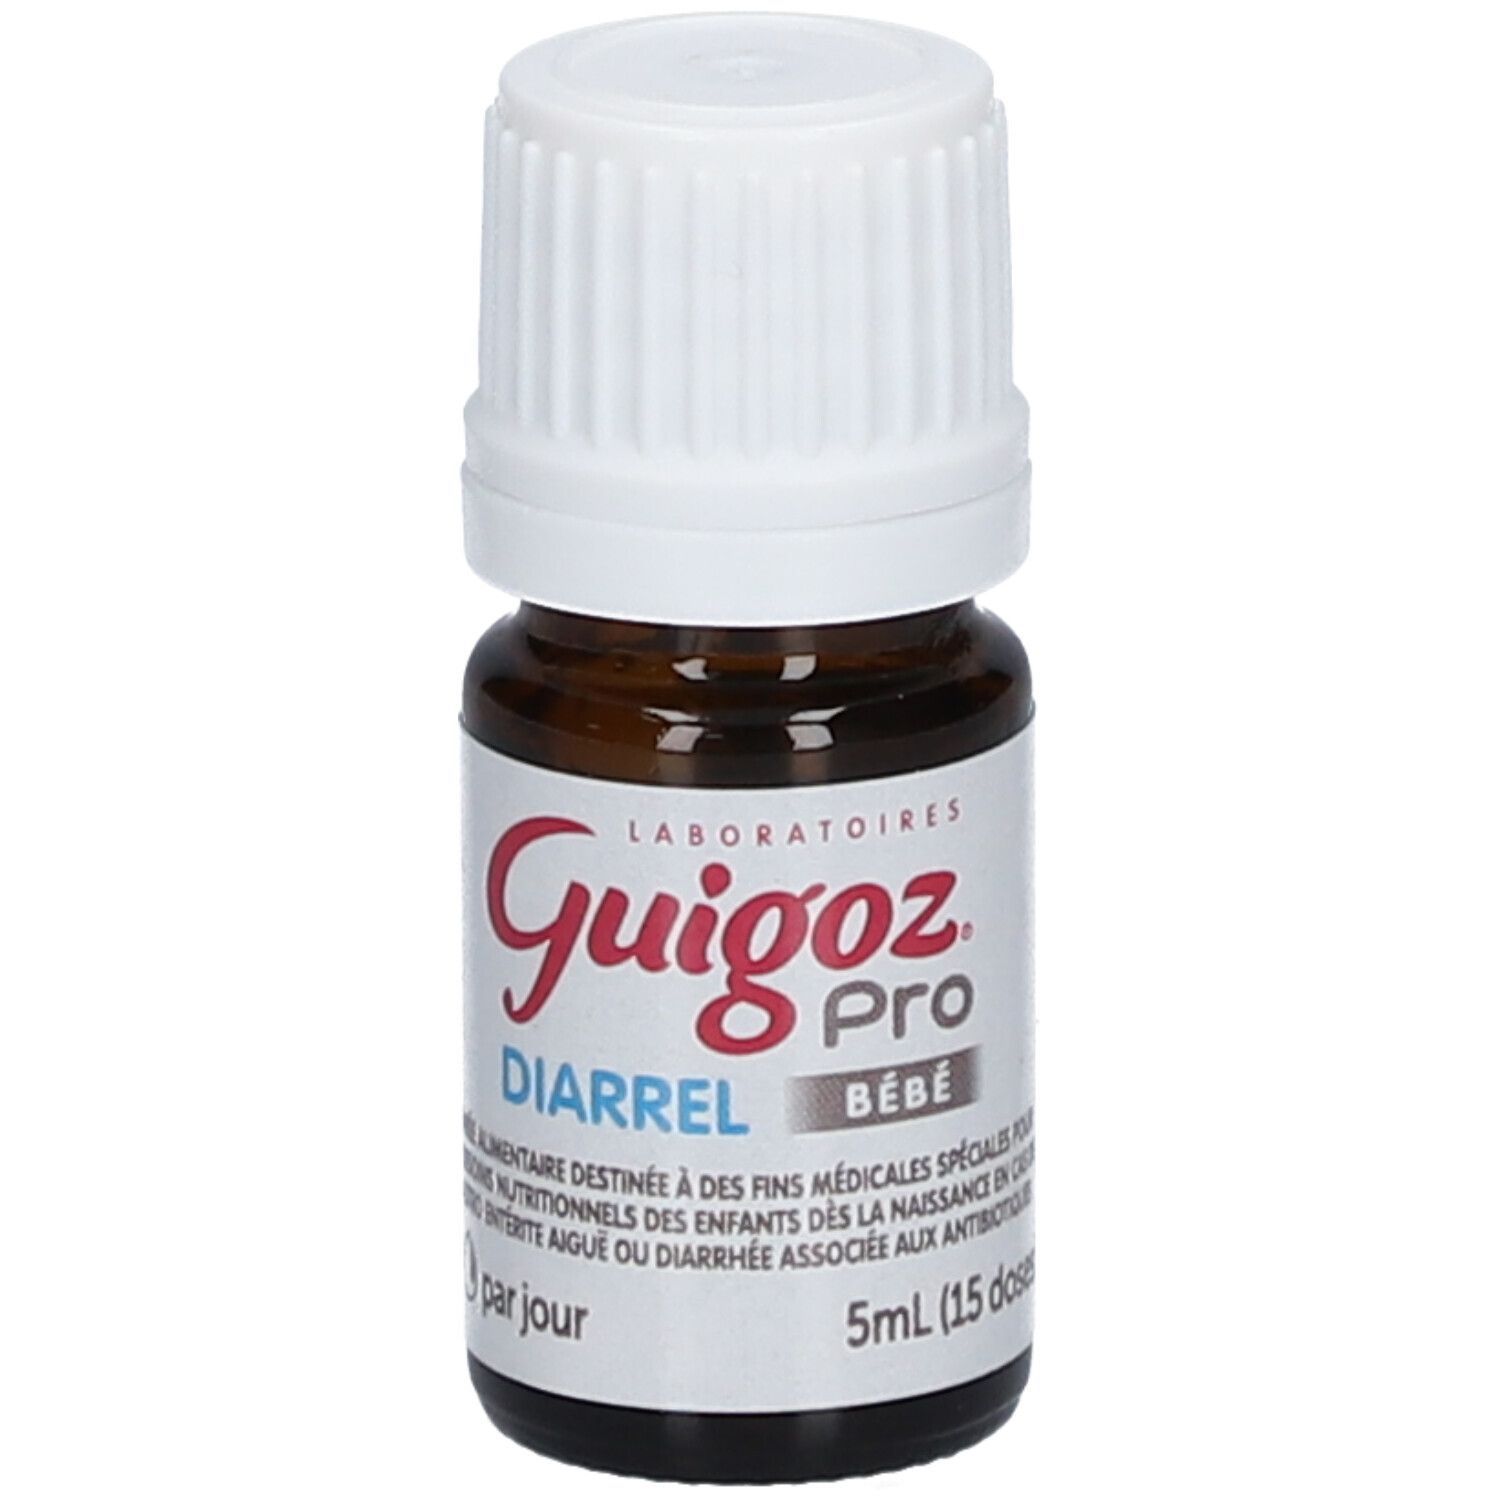 Guigoz® Pro Bébé Diarrel